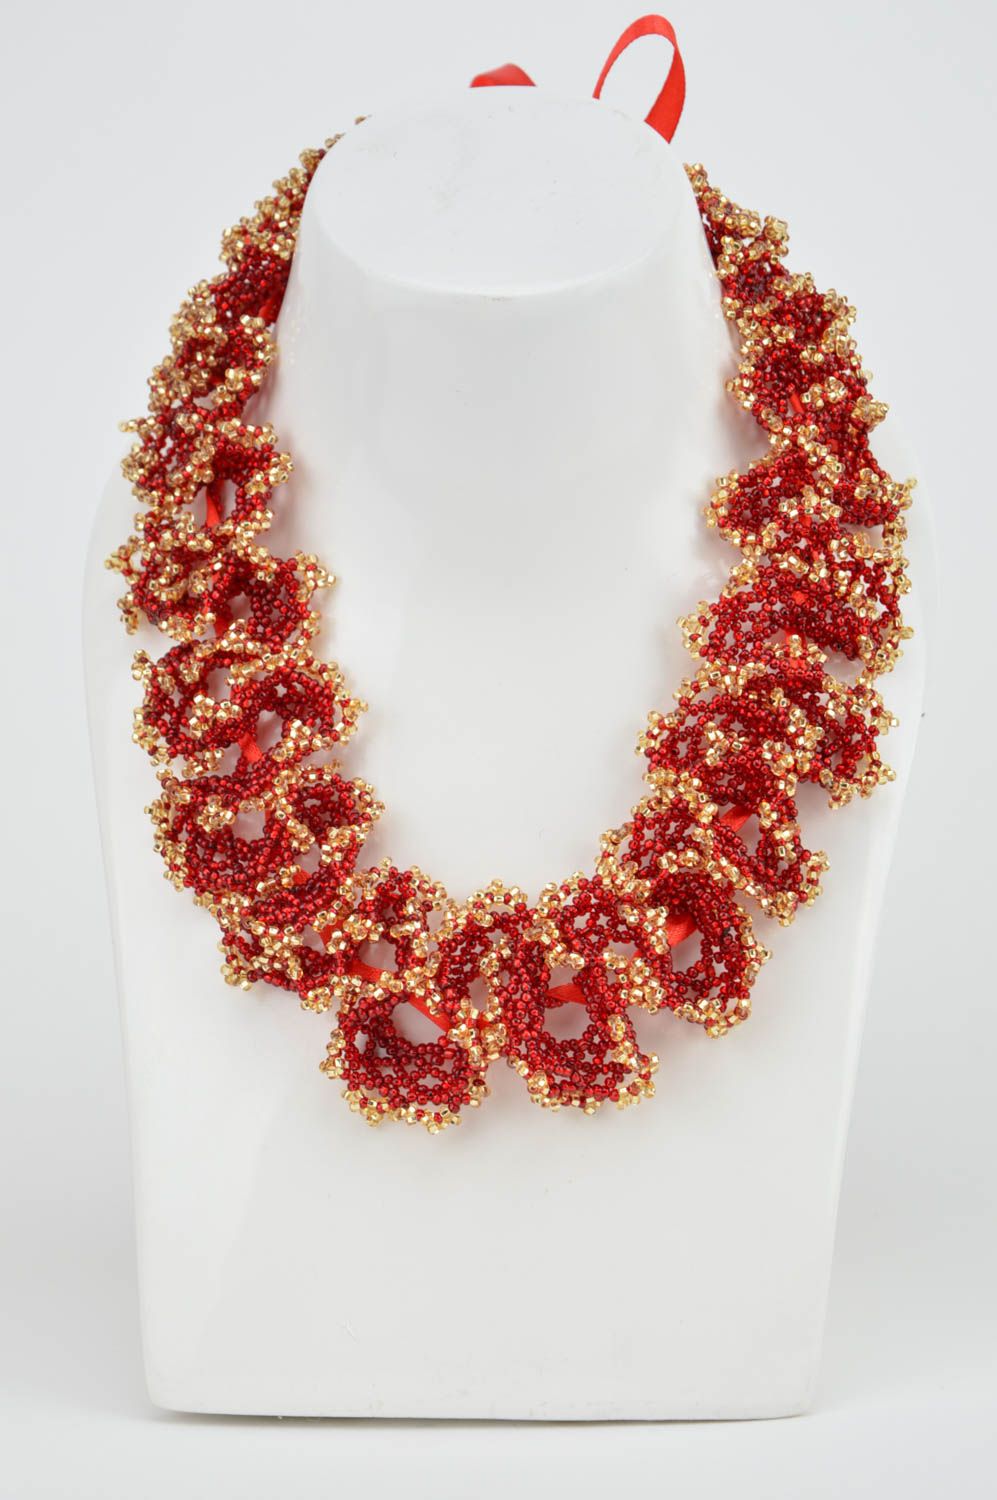 Ожерелье из бисера красное с золотом стильное необычное ручной работы  фото 3